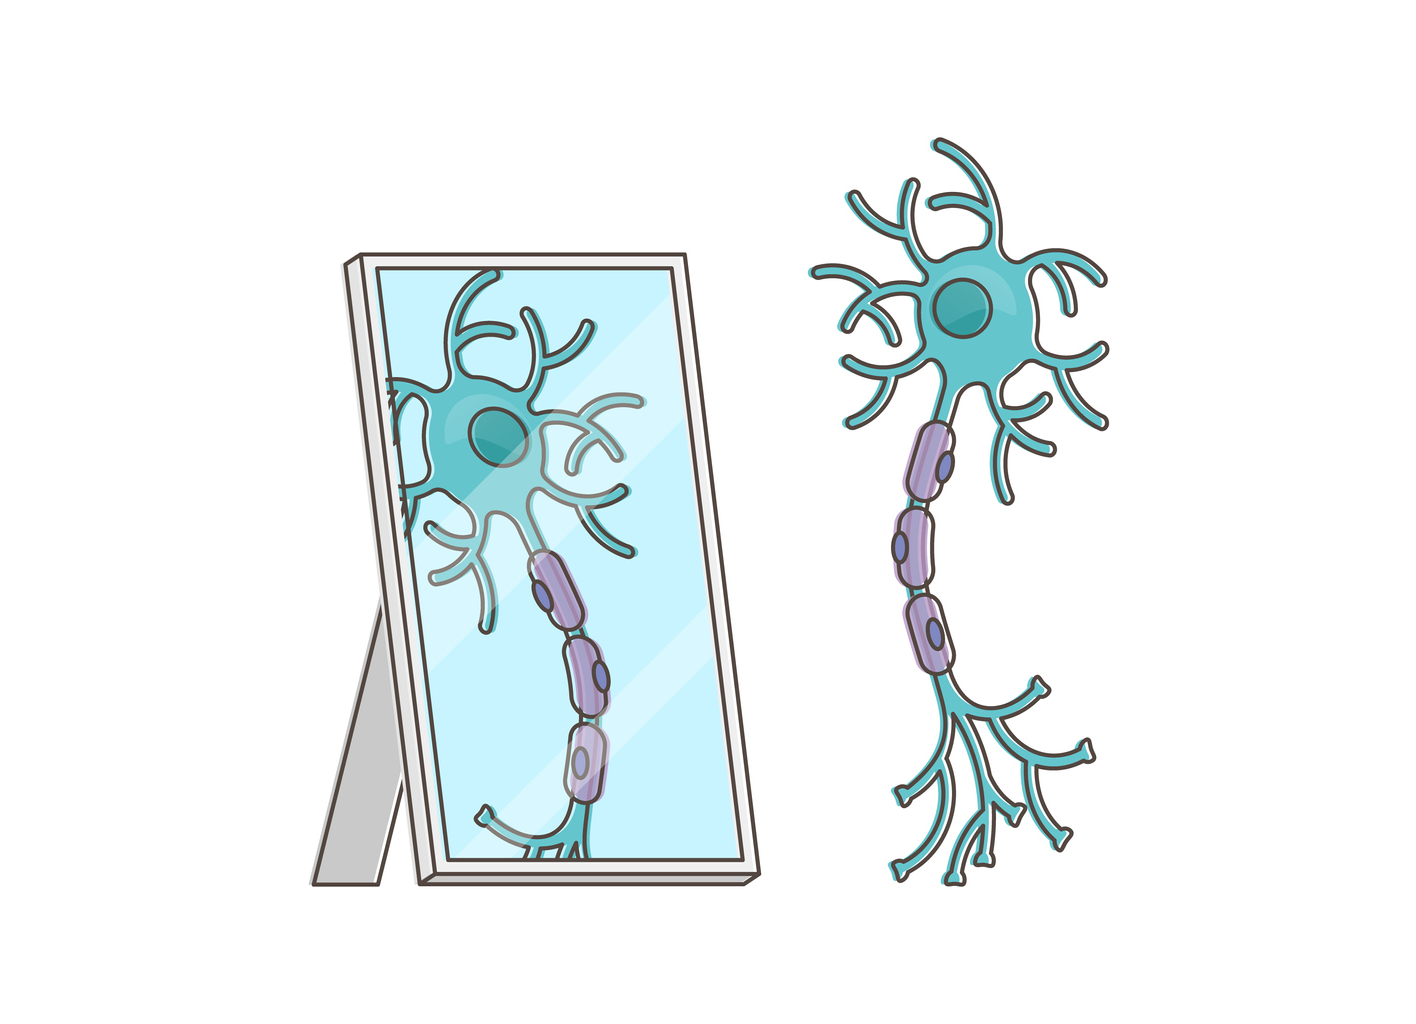 Spiegelneuronen